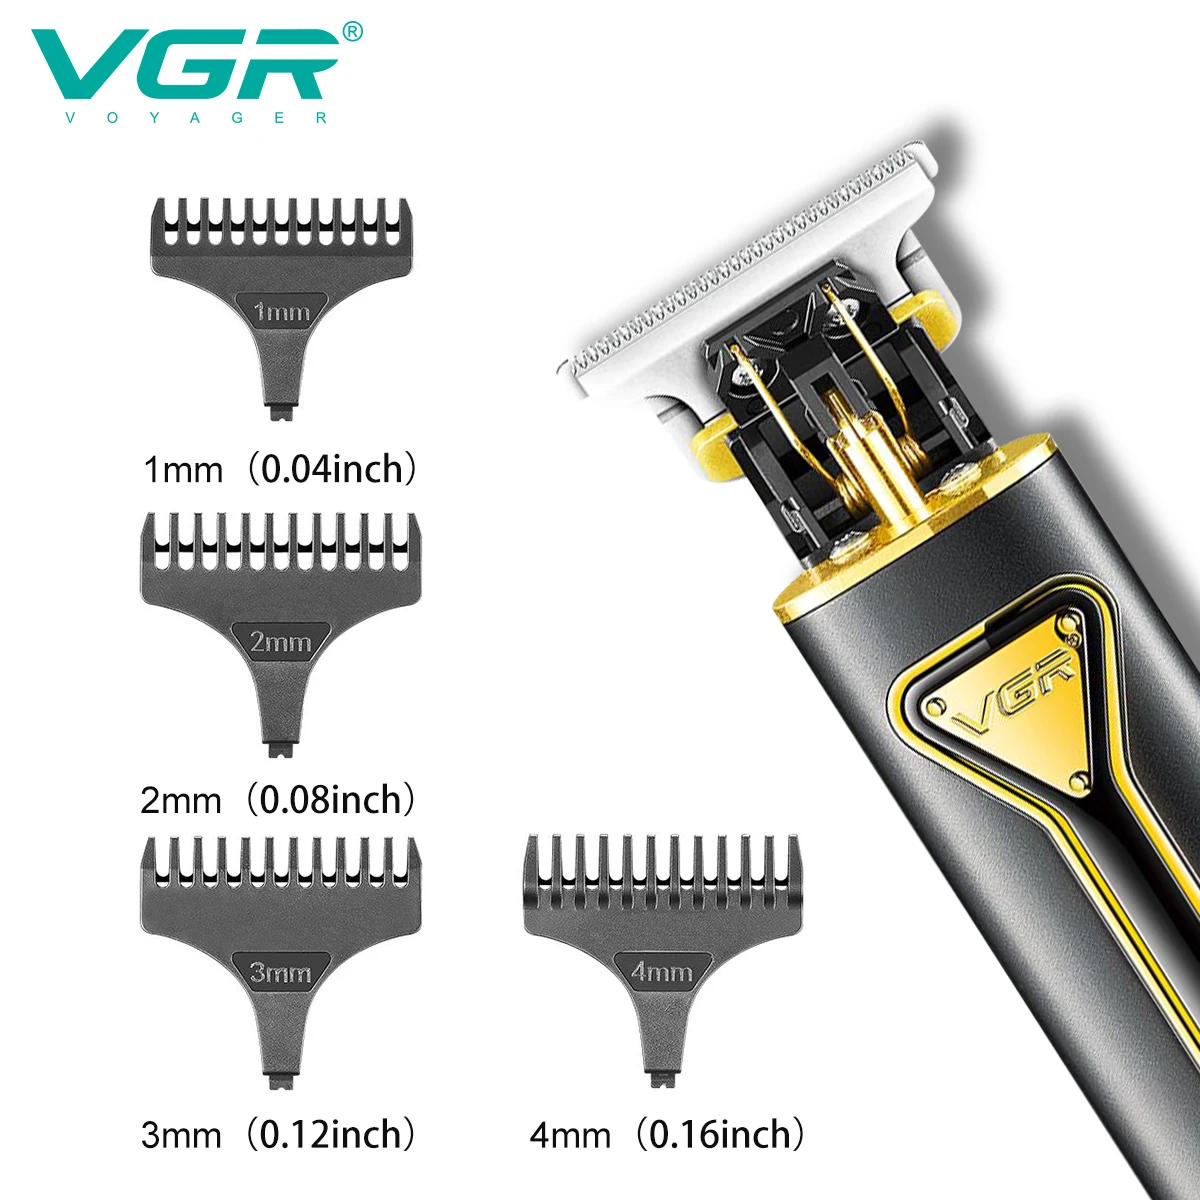 VGR T9 Saç Kesme Metal Saç Düzeltici Profesyonel Sakal Tıraş Makinesi Şarj Edilebilir Saç Kesimi Makinesi Akülü Düzeltici Erkekler için Yeni V-009